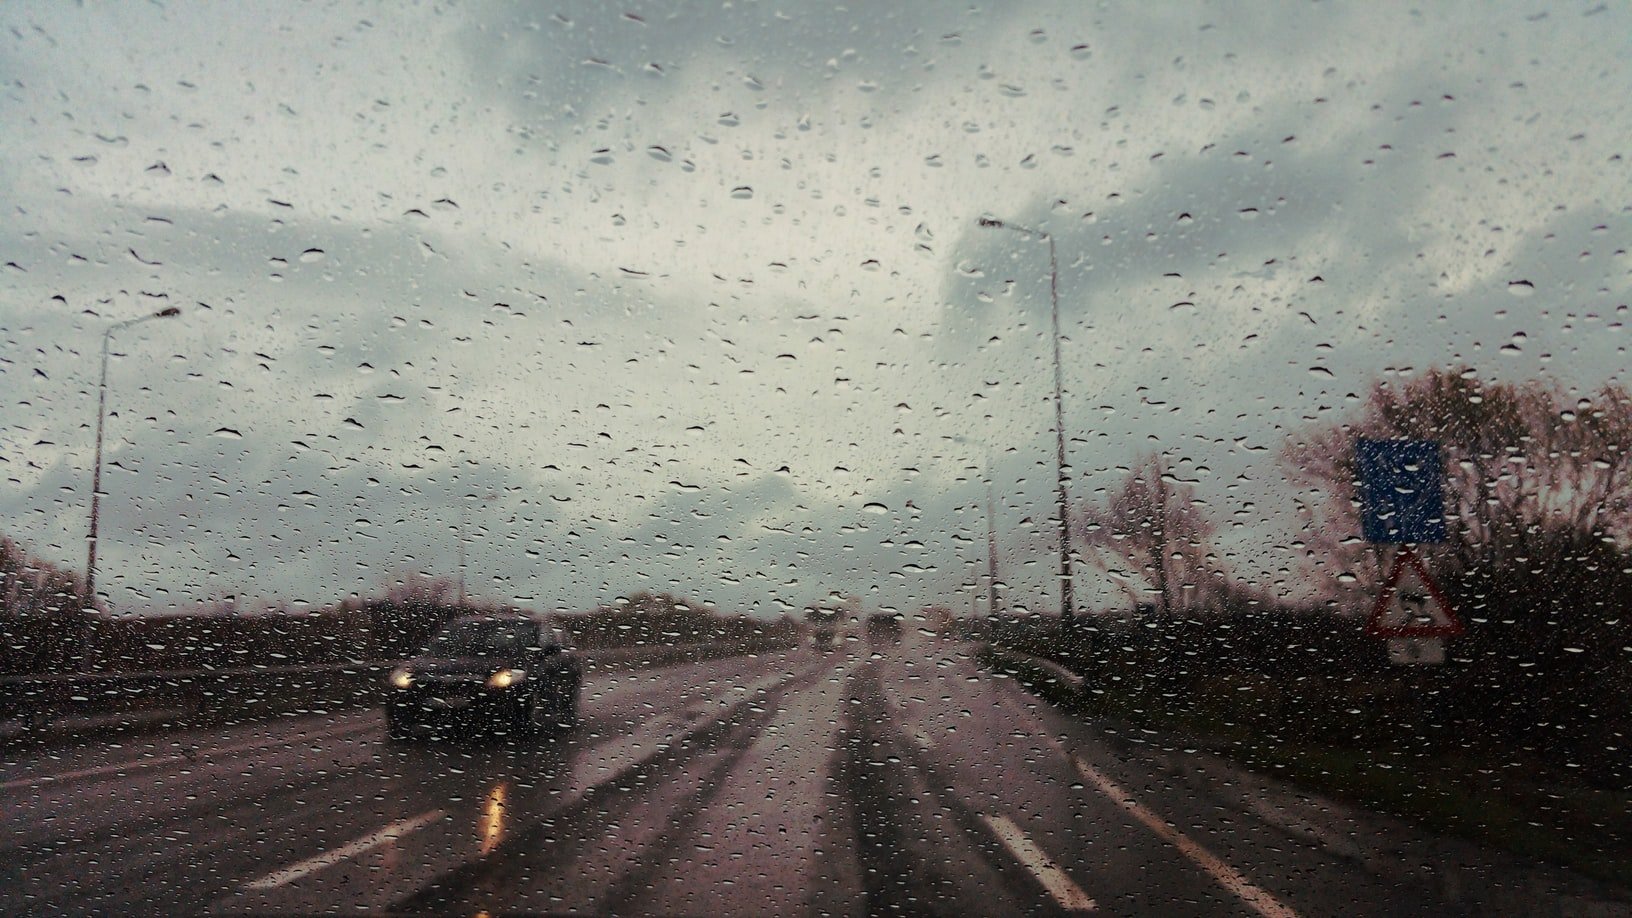 Il pleuvait quand John a vu la vieille dame au bord de la route | Source : Unsplash